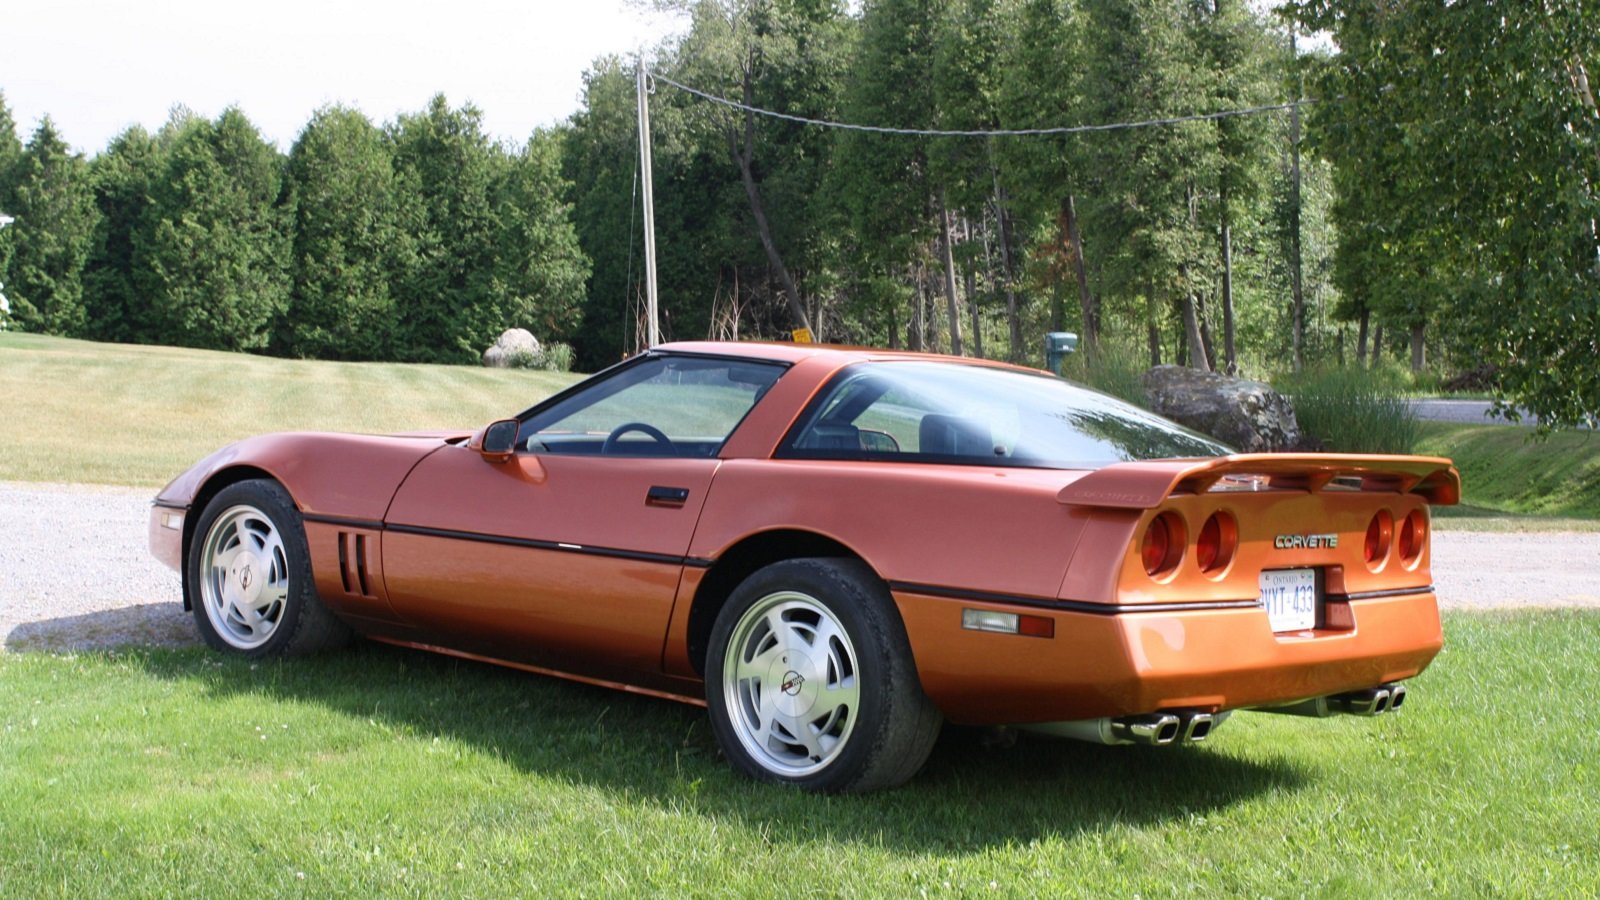 1986 Copper Corvette. Photo:corvetteforum.com